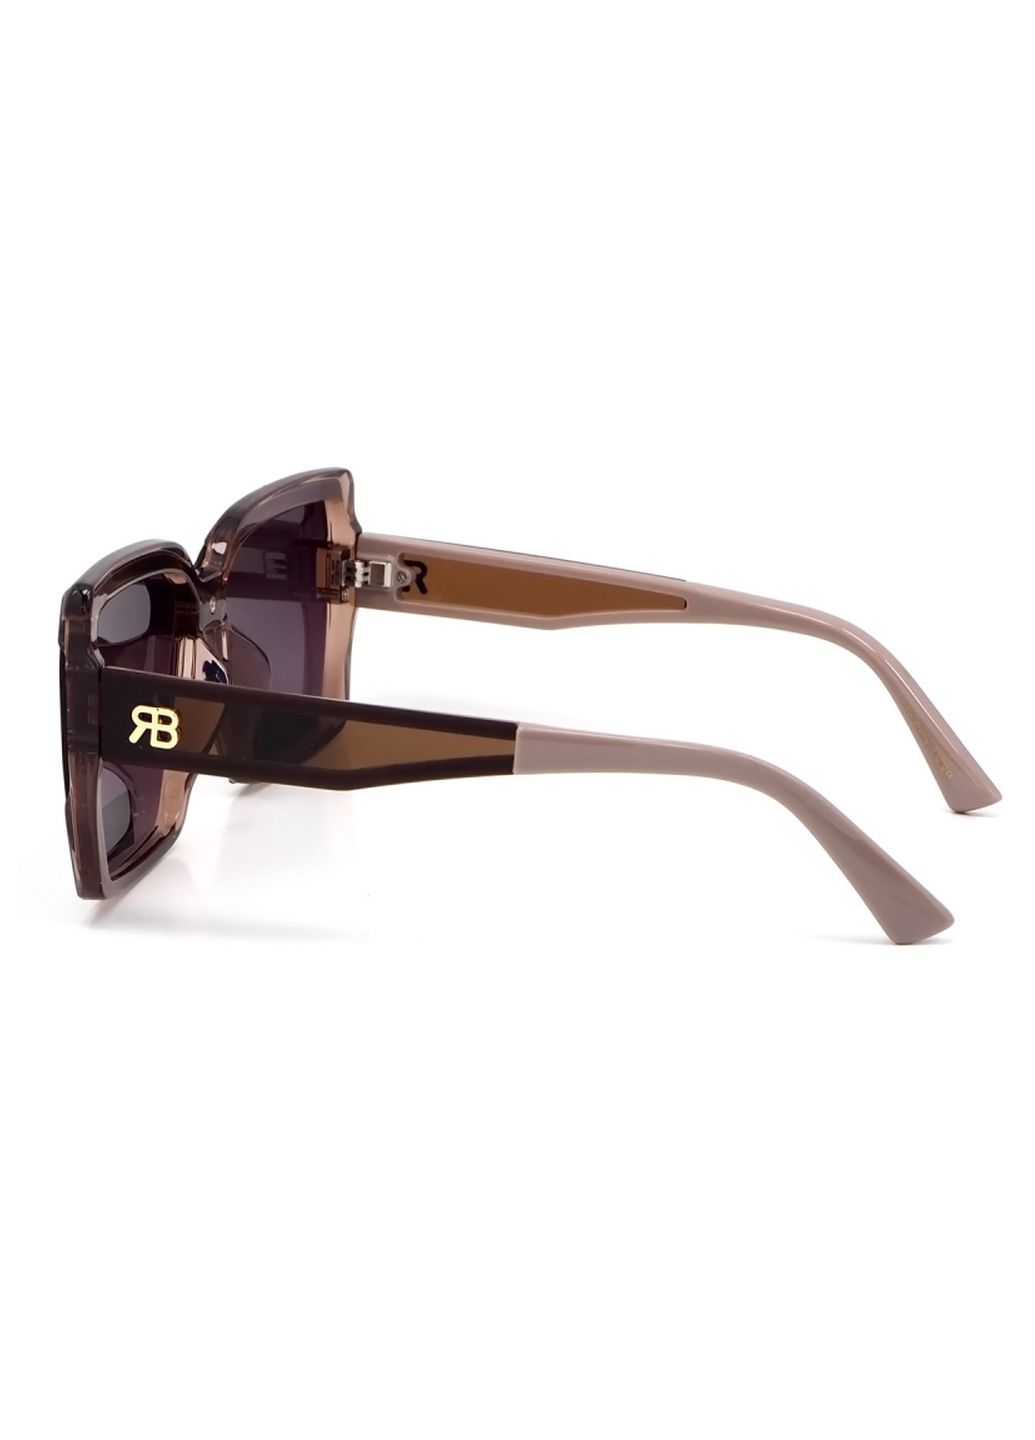 Купить Женские солнцезащитные очки Rita Bradley с поляризацией RB713 112025 в интернет-магазине